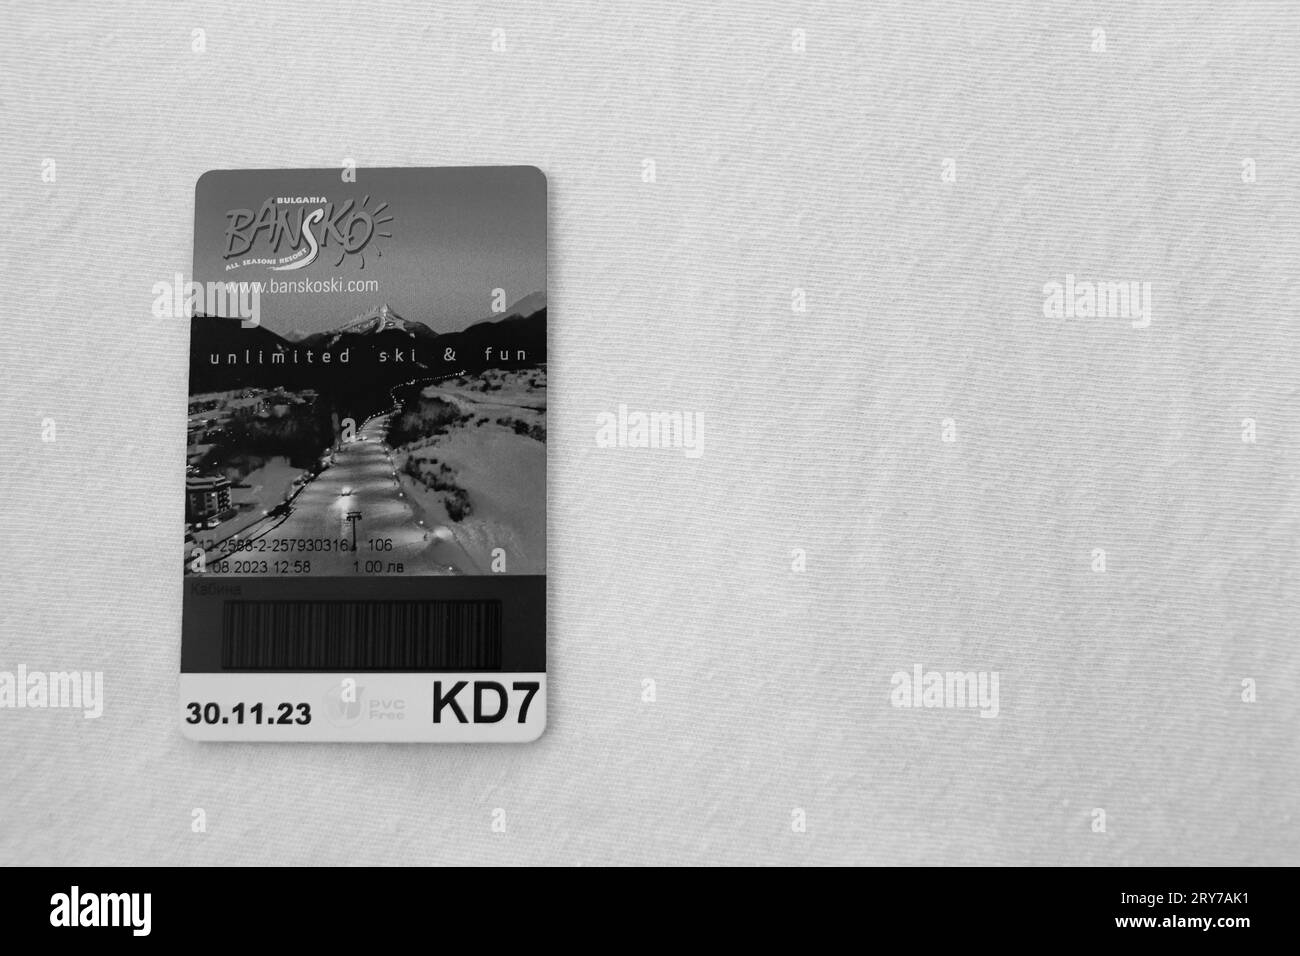 Schwarz-weiß, Bansko Ski, Gondelbahn Attraktion Eintrittskarte auf weißem Hintergrund Stockfoto